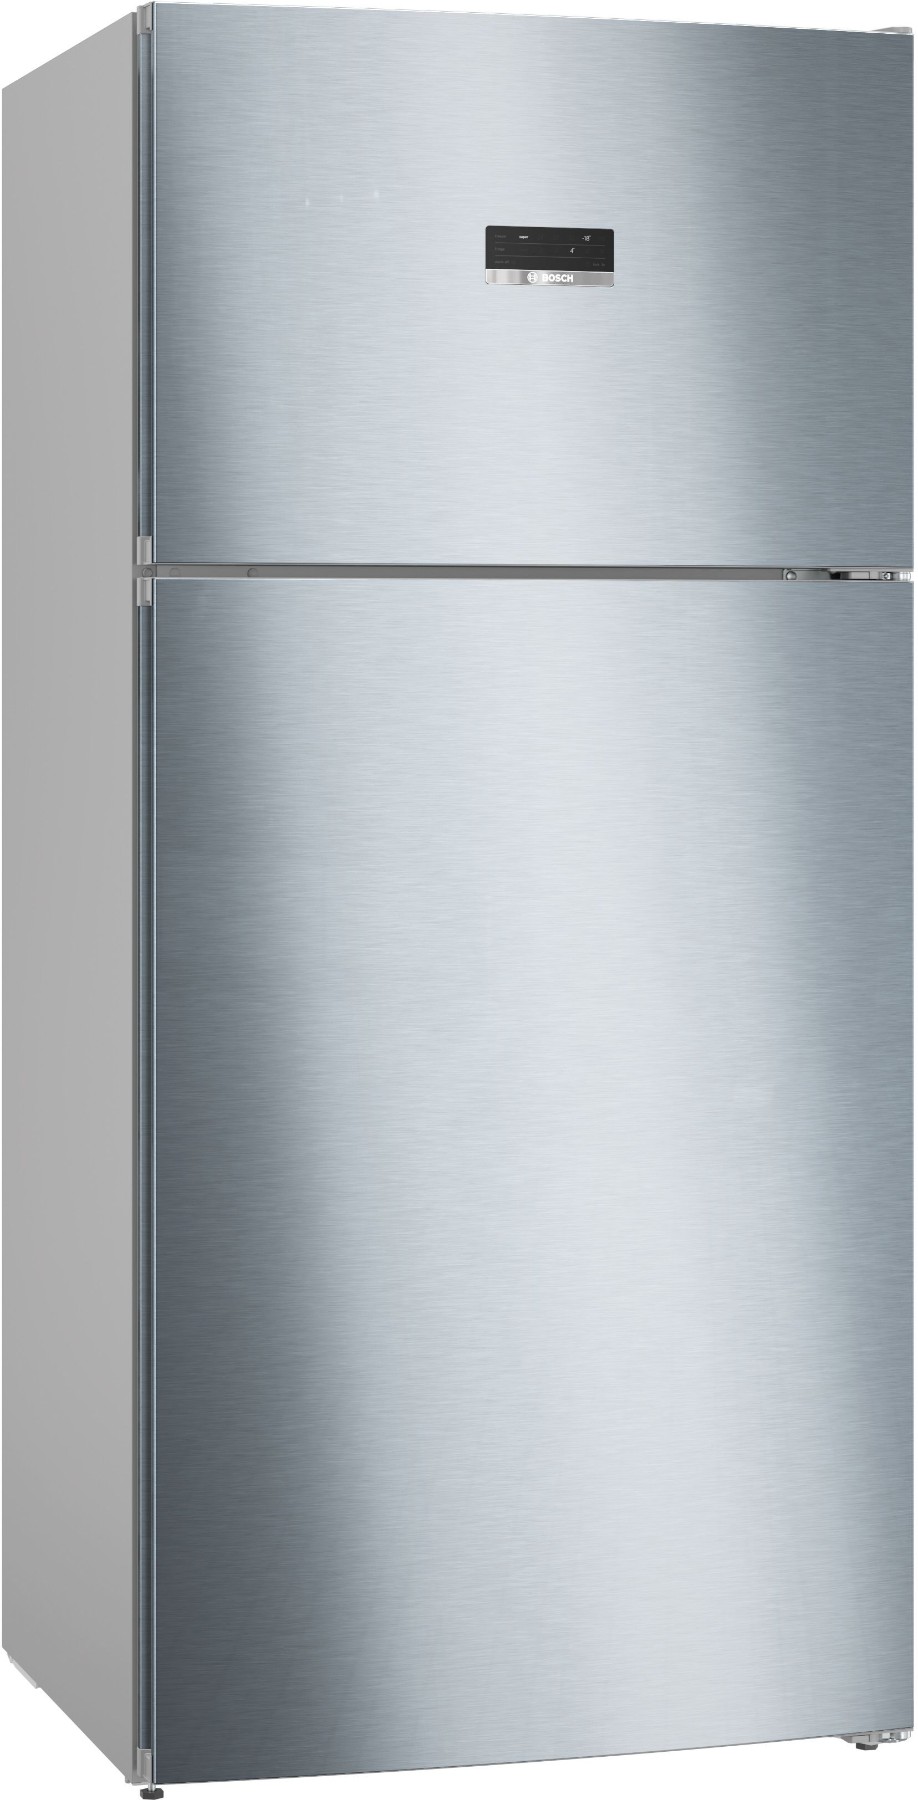 KDN86XIF0N Serie | 4 Üstten Donduruculu Buzdolabı 186 x 86 cm Kolay temizlenebilir Inox